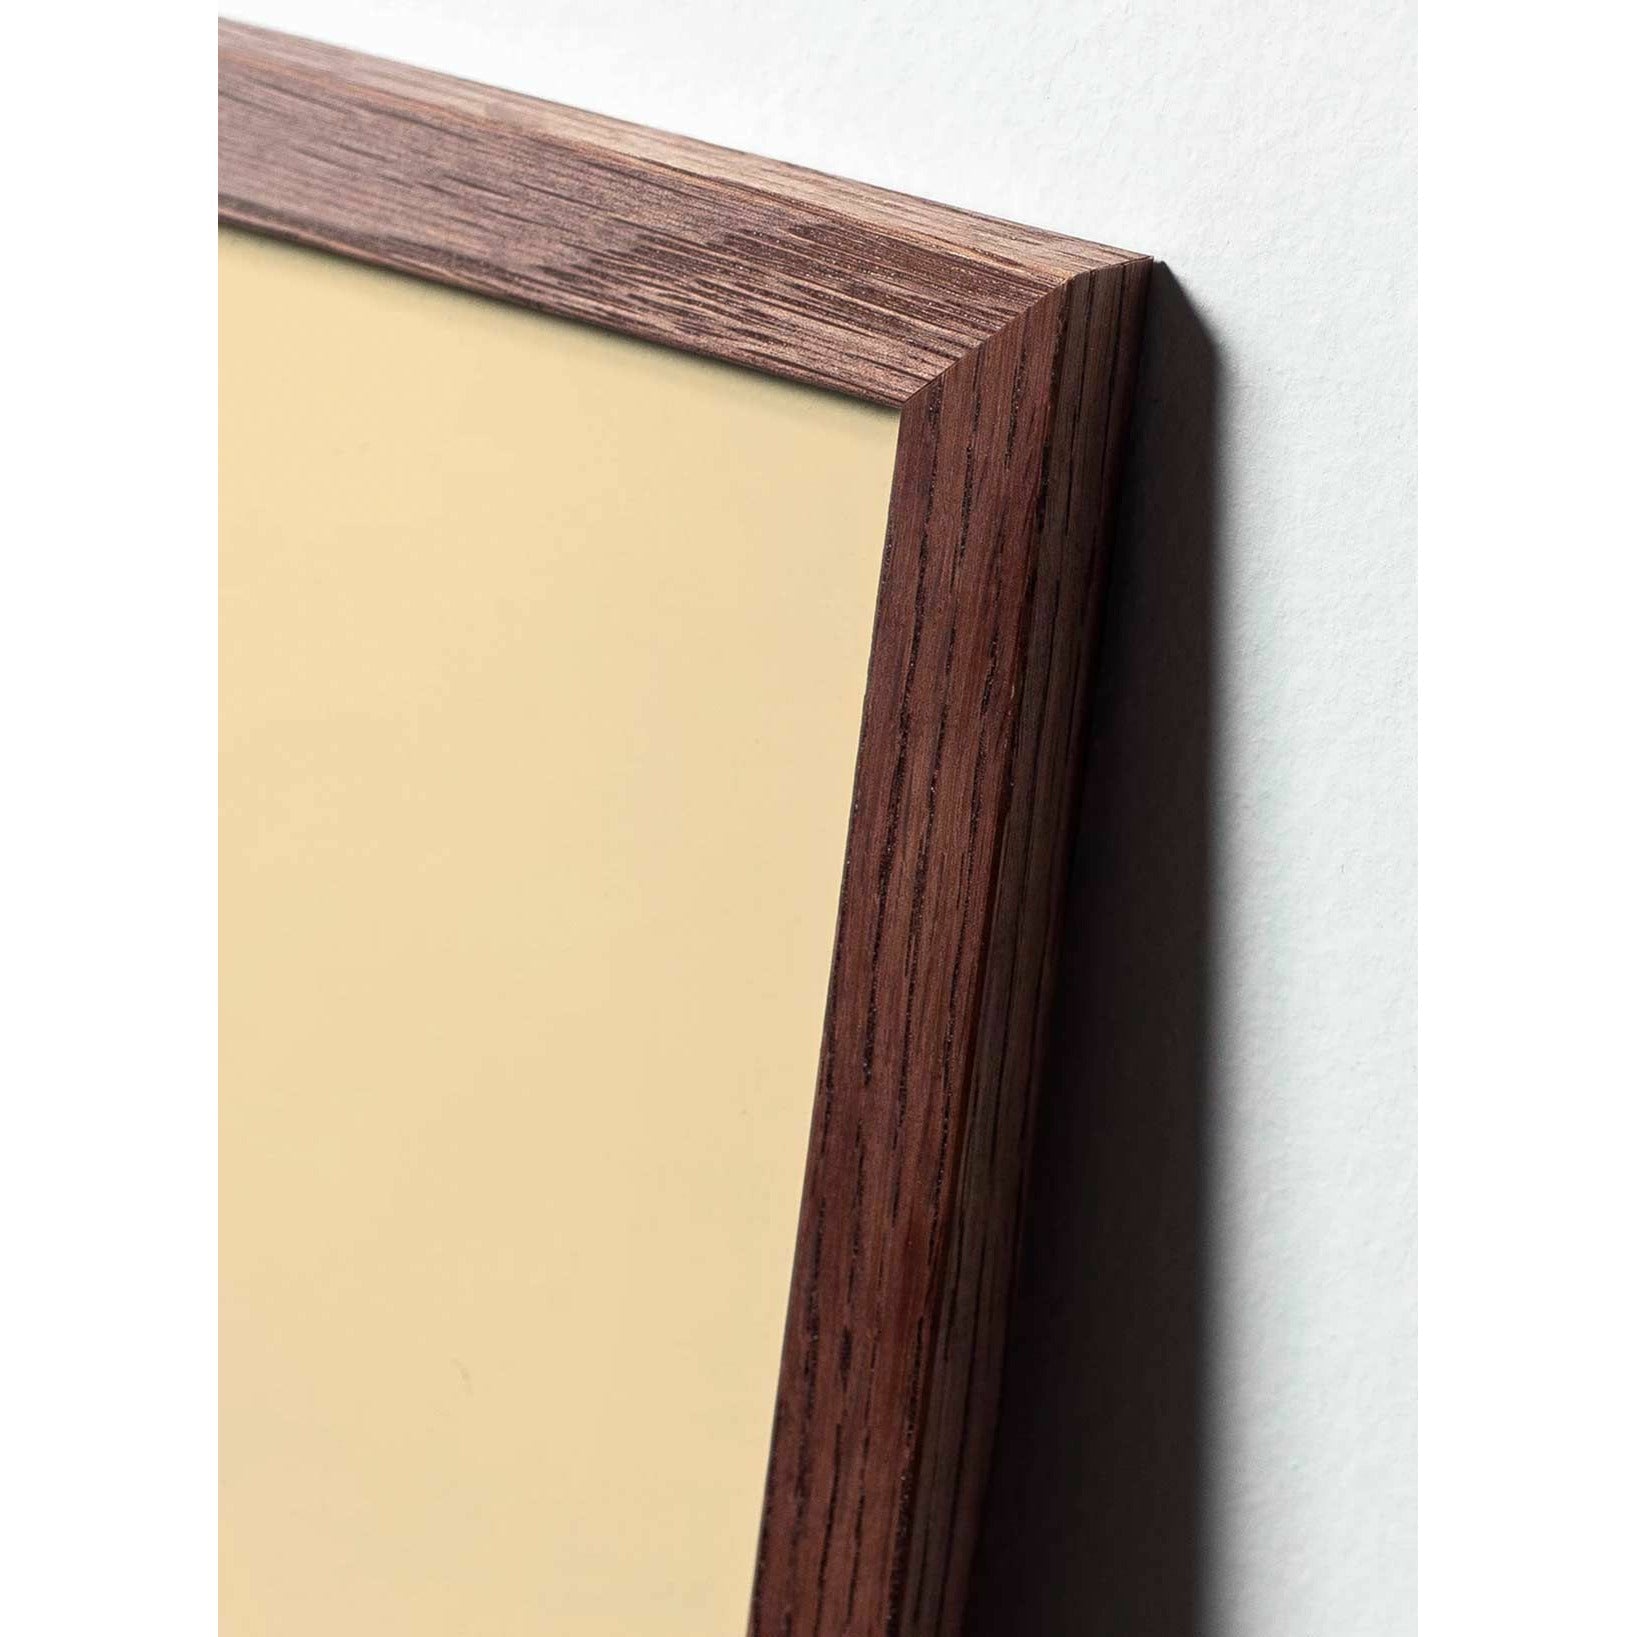 Brainchild Munapaperin pidike juliste, kehys, joka on valmistettu tummasta puusta 50x70 cm, vaaleanpunainen tausta